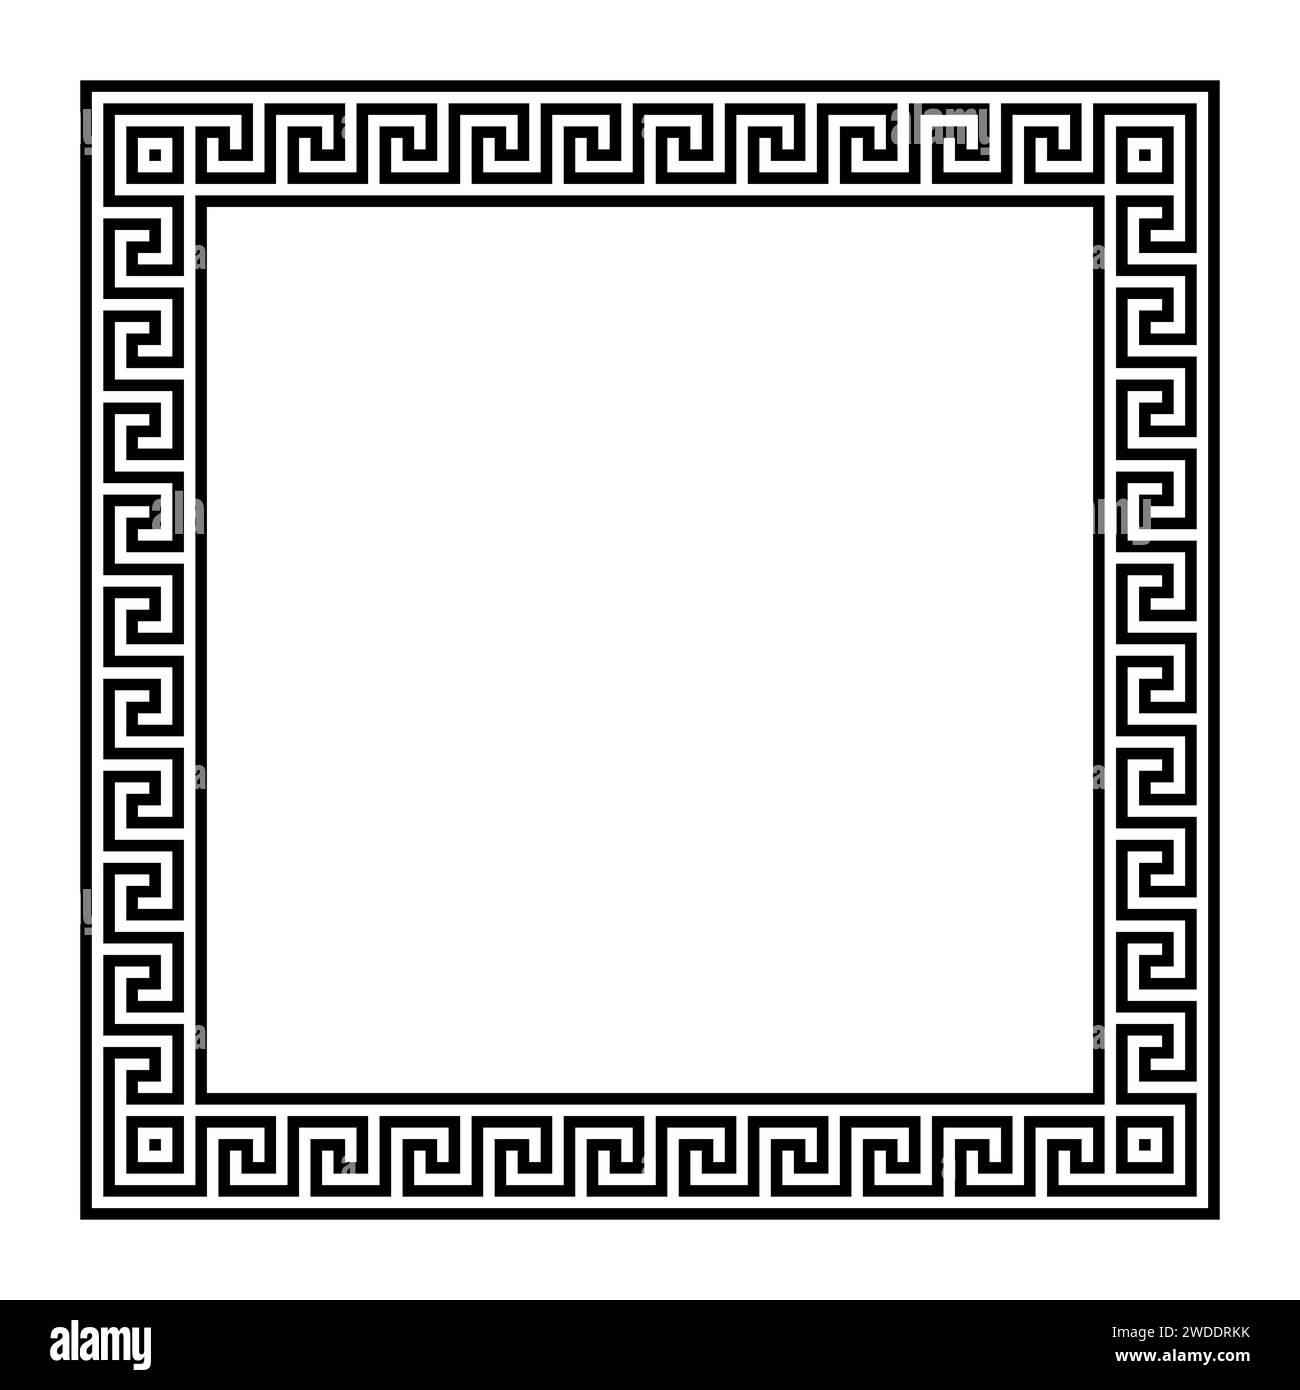 Rechteckiger Rahmen mit nahtlosem griechischem Tastenmuster. Border mit griechischem Fret-Motiv, aus durchgehenden Linien gebaut. Stockfoto